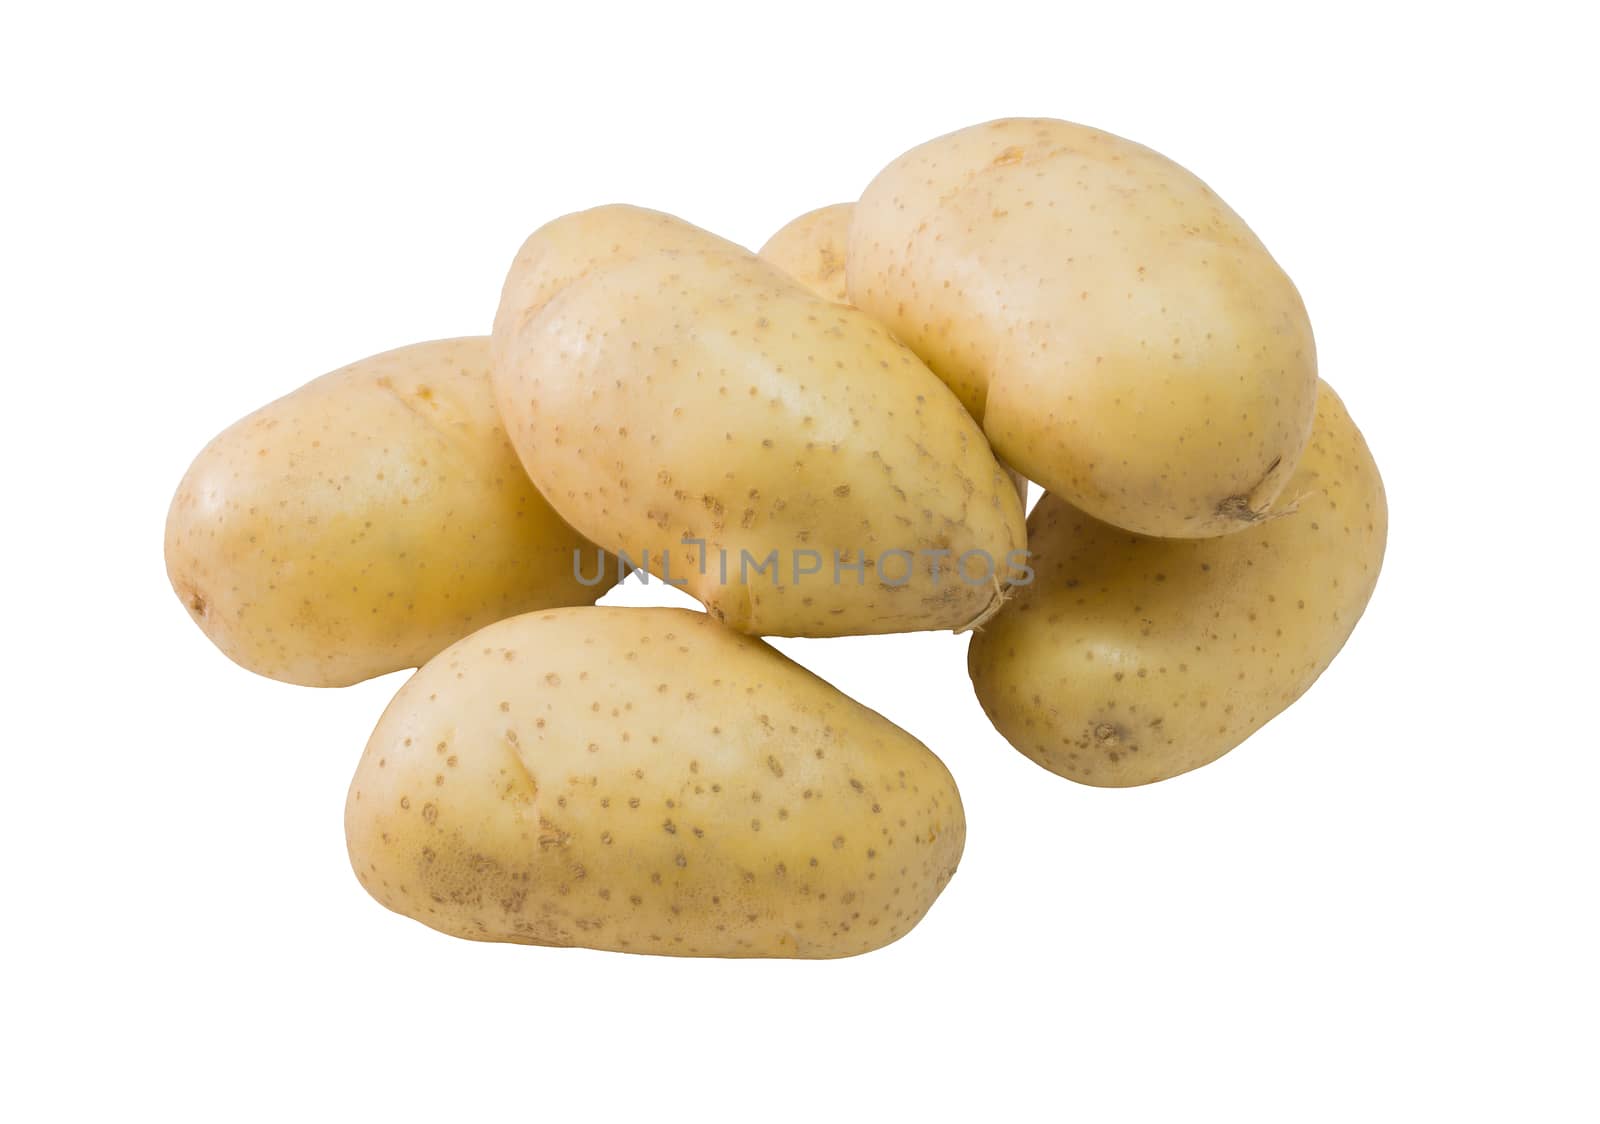 Fresh potatoes isolated on white background close up